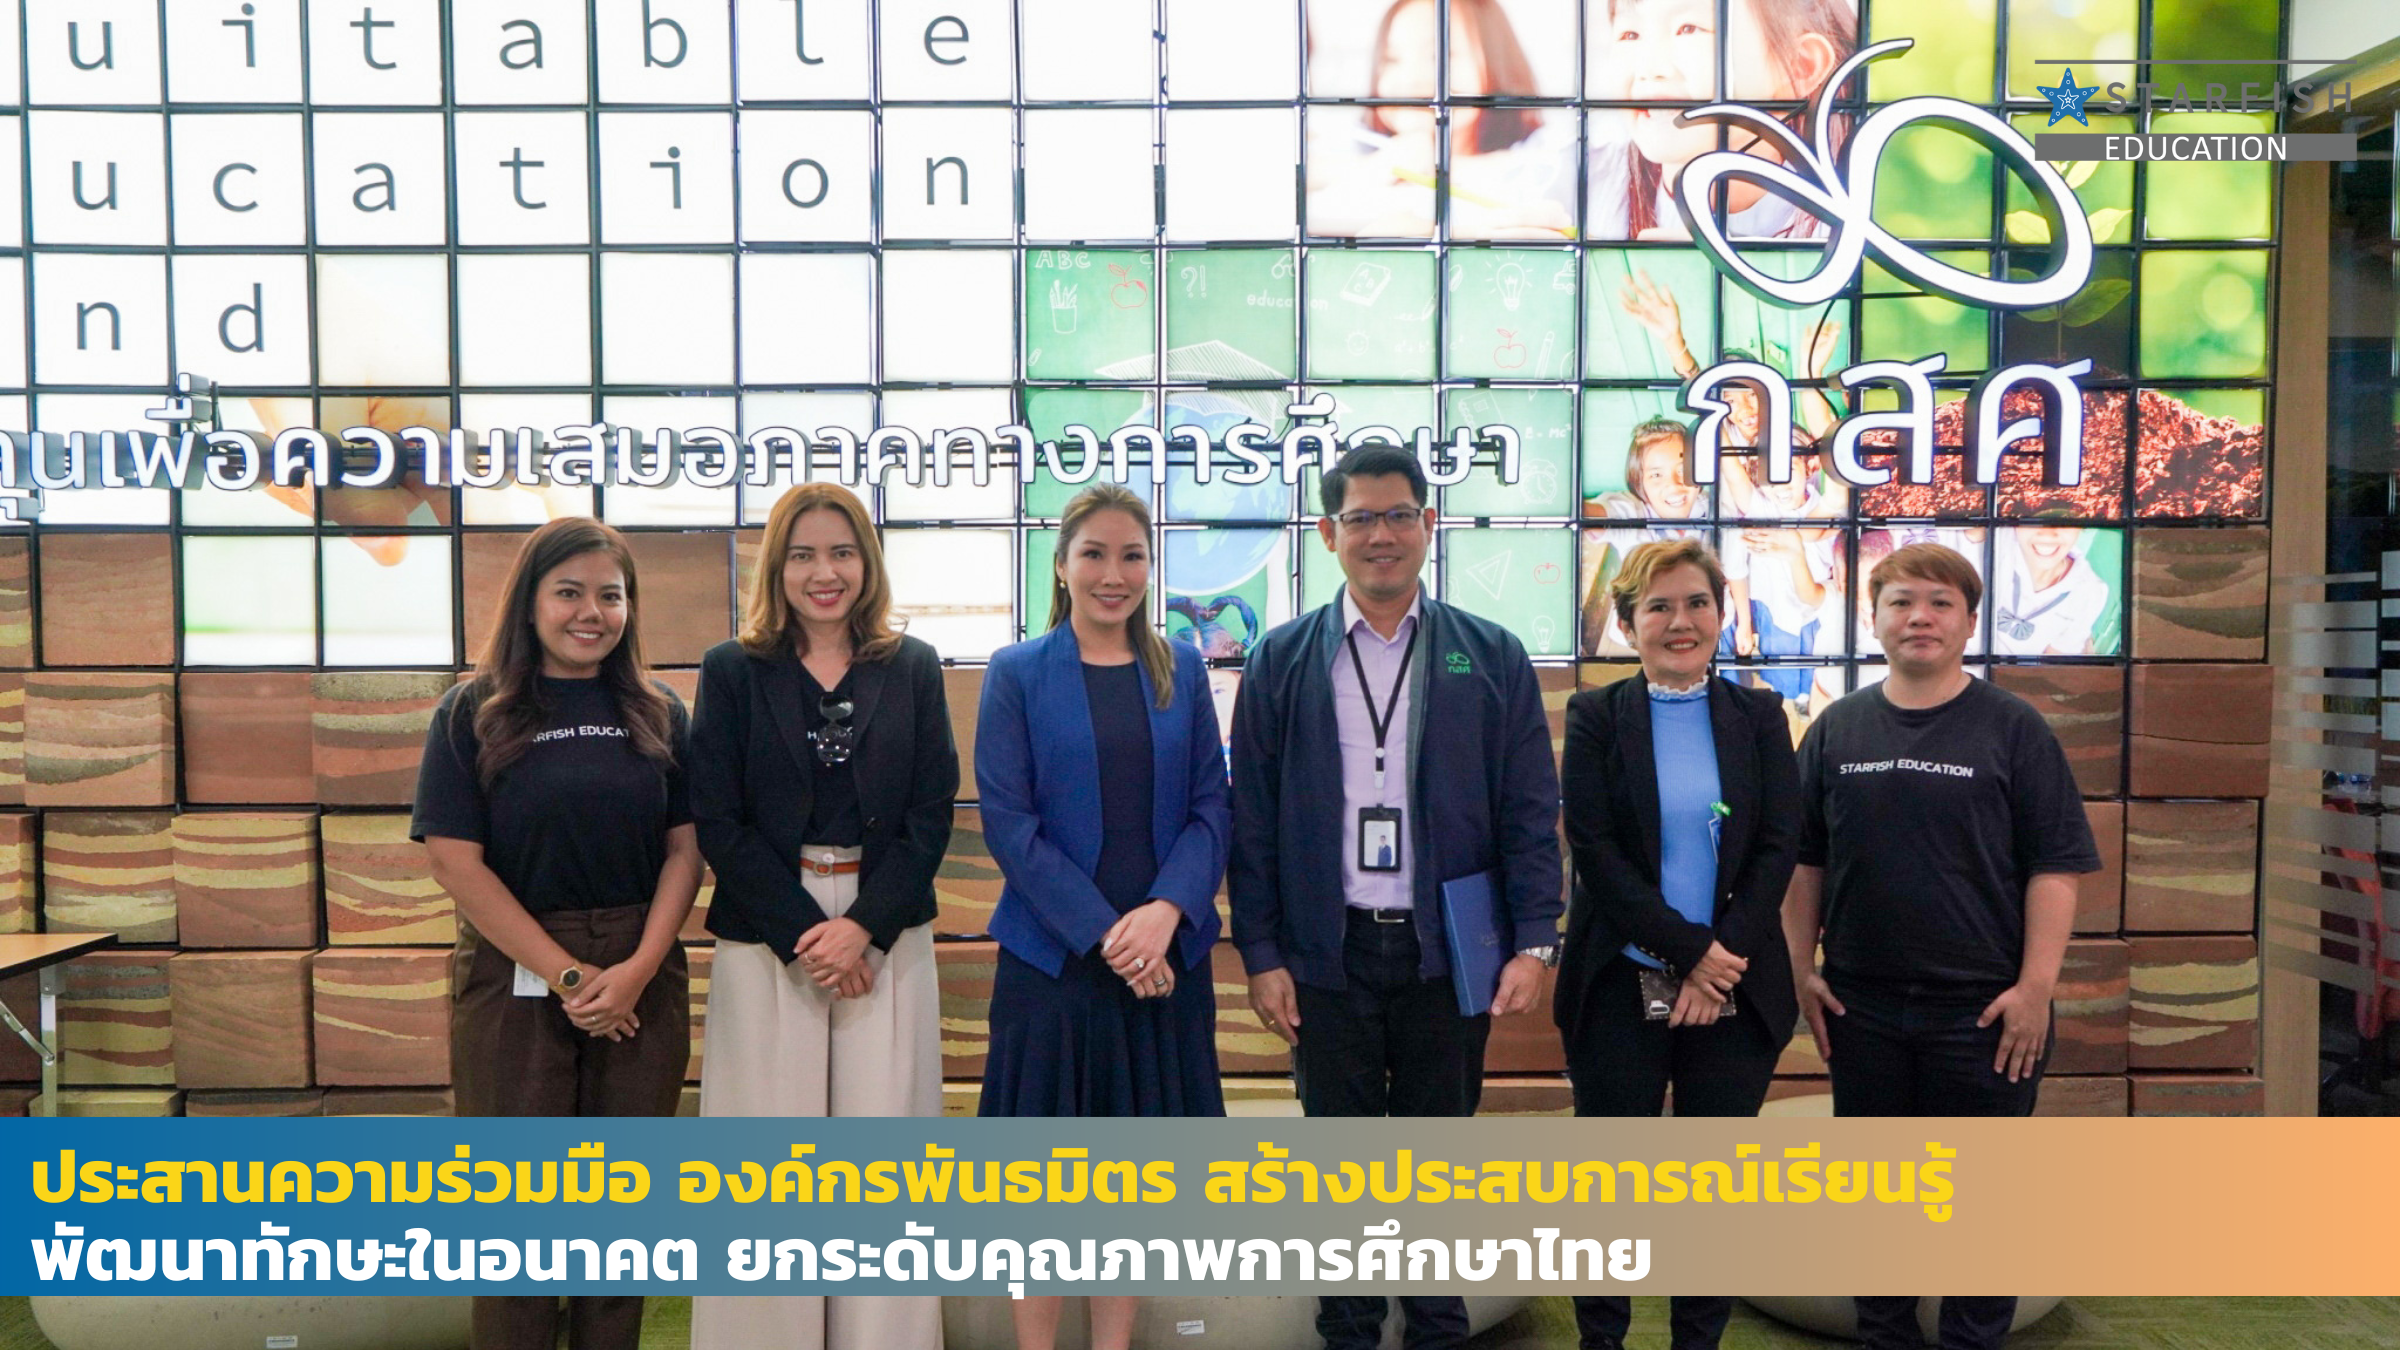 ประสานความร่วมมือ องค์กรพันธมิตร สร้างประสบการณ์เรียนรู้ พัฒนาทักษะในอนาคต ยกระดับคุณภาพการศึกษาไทย